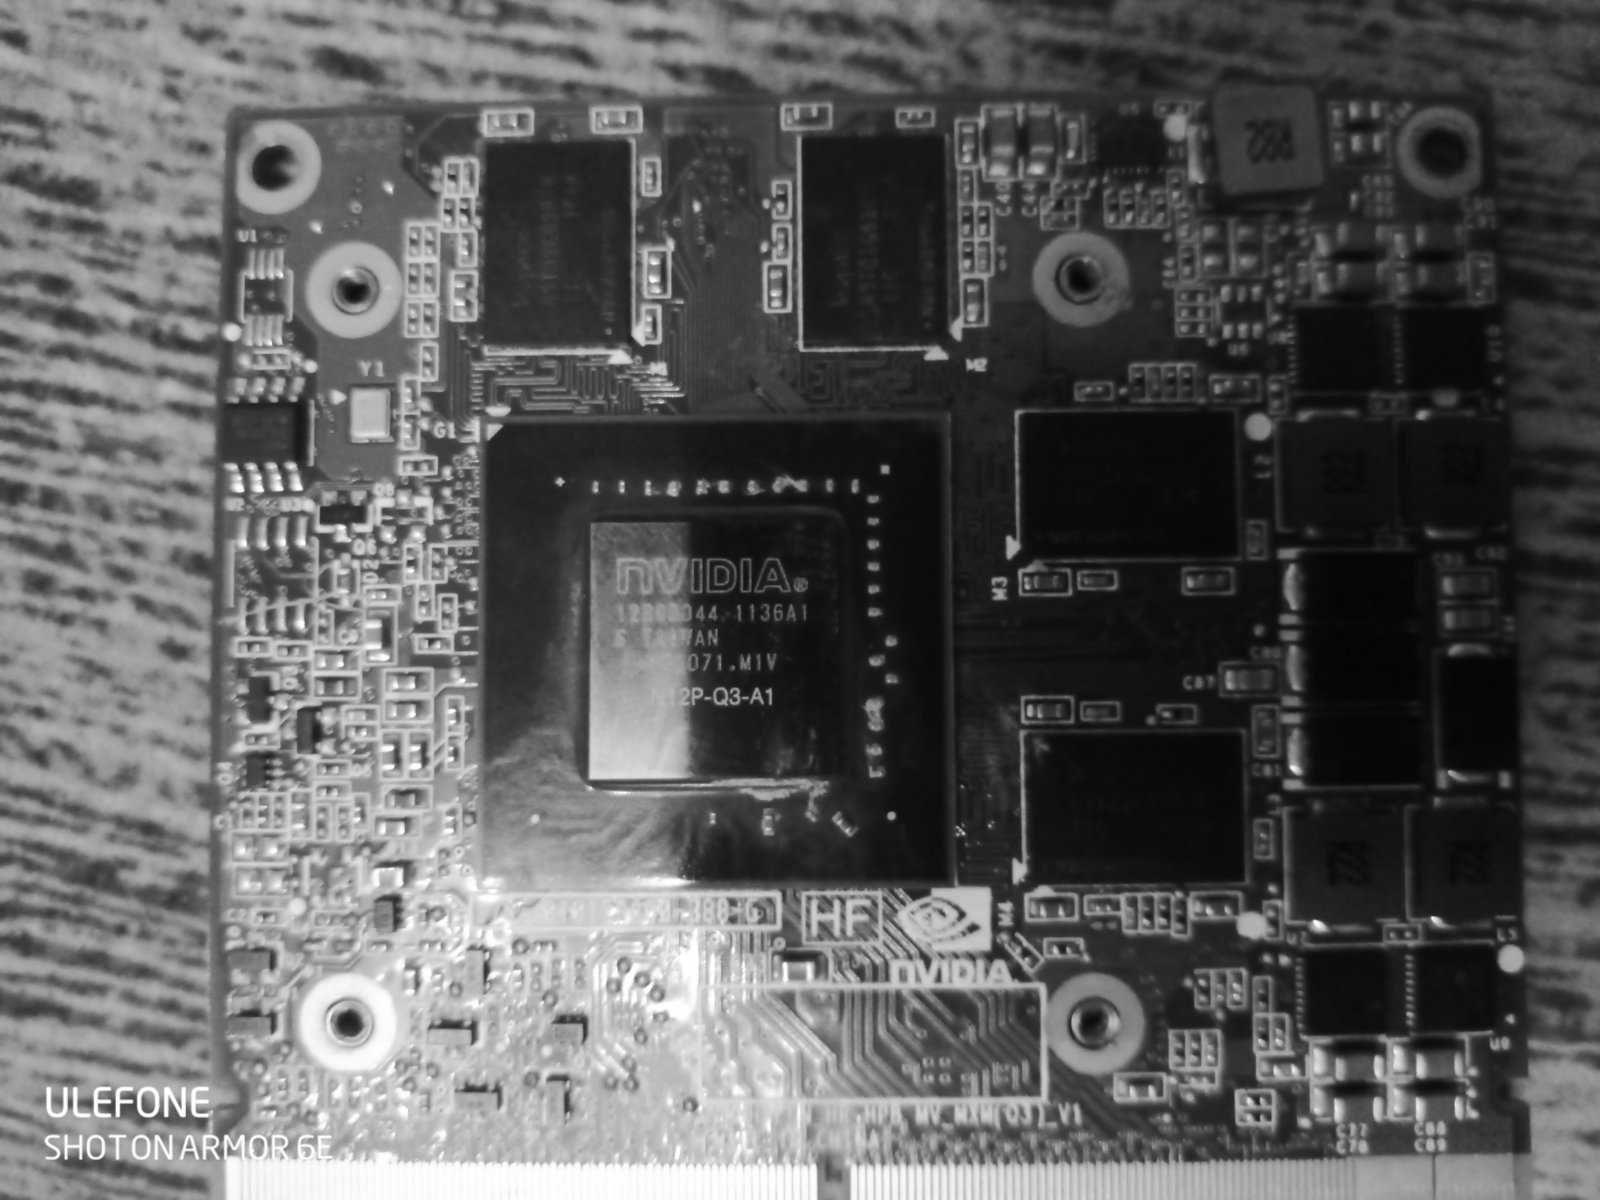 NVIDIA Quadro 2000M N12P-Q3-A1 DDR3 2GB MXM A 3.0 Video Card